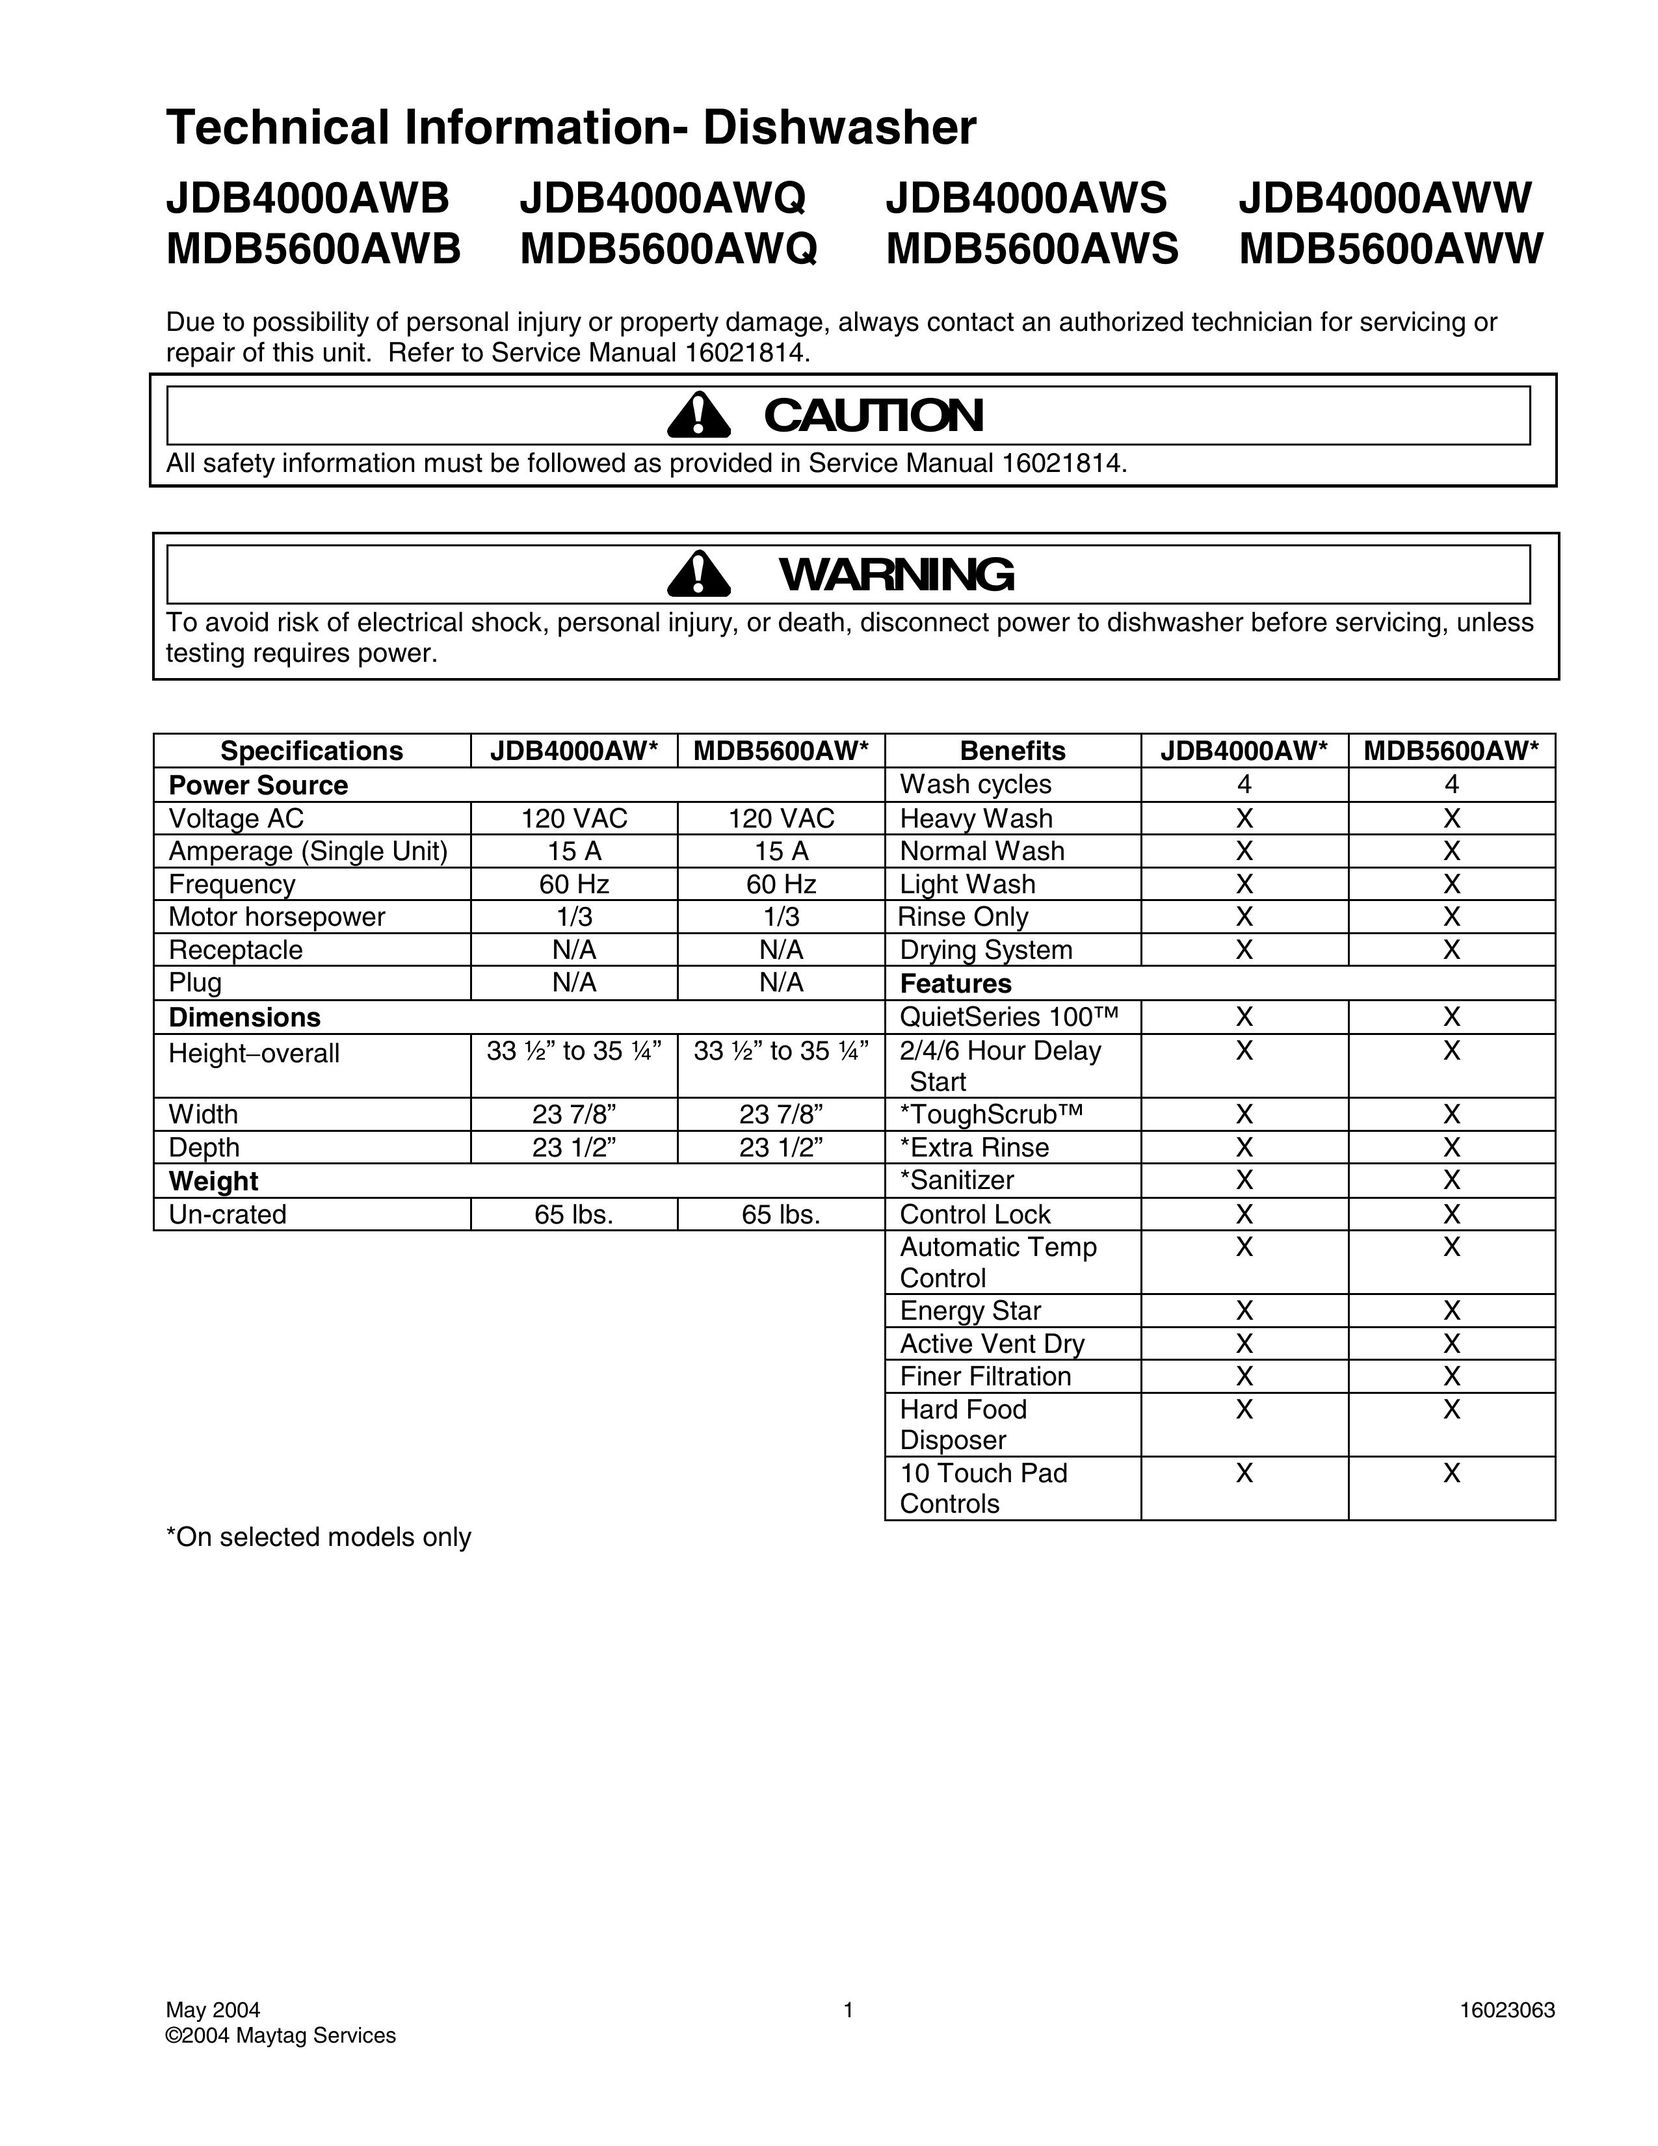 Maytag JDB4000AWQ Dishwasher User Manual